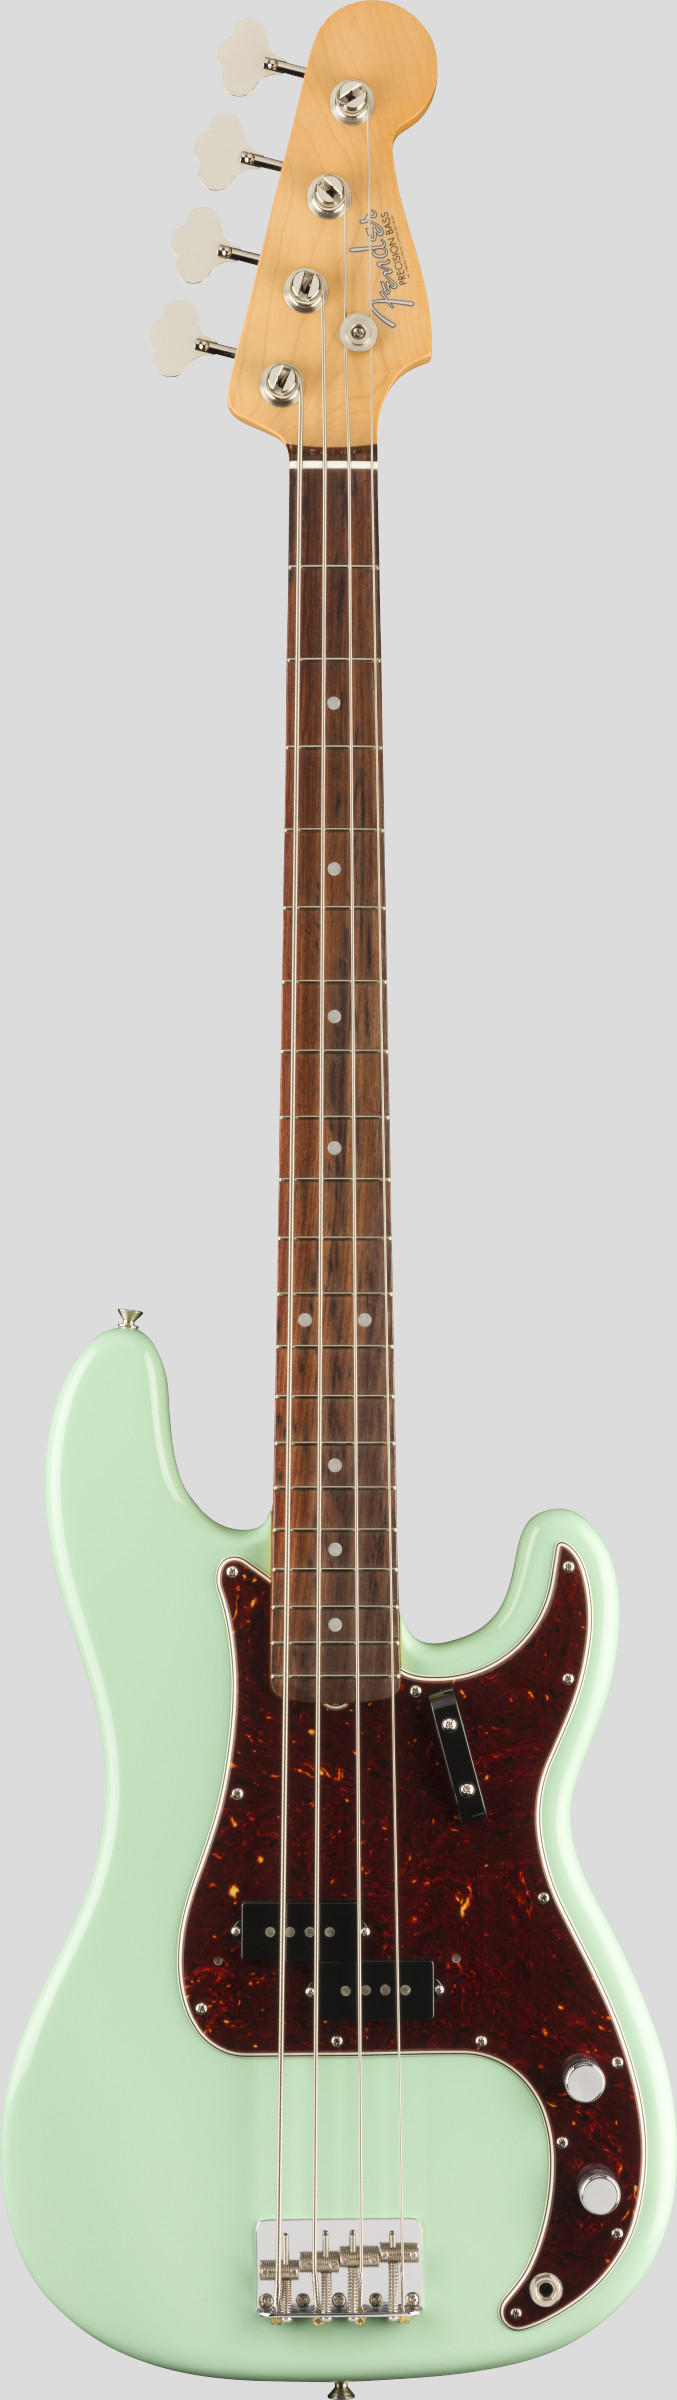 Fender American Original 60 Precision Bass Surf Green (custodia Fender G&G Deluxe Hardshell Case) 0190120857 Made in Usav